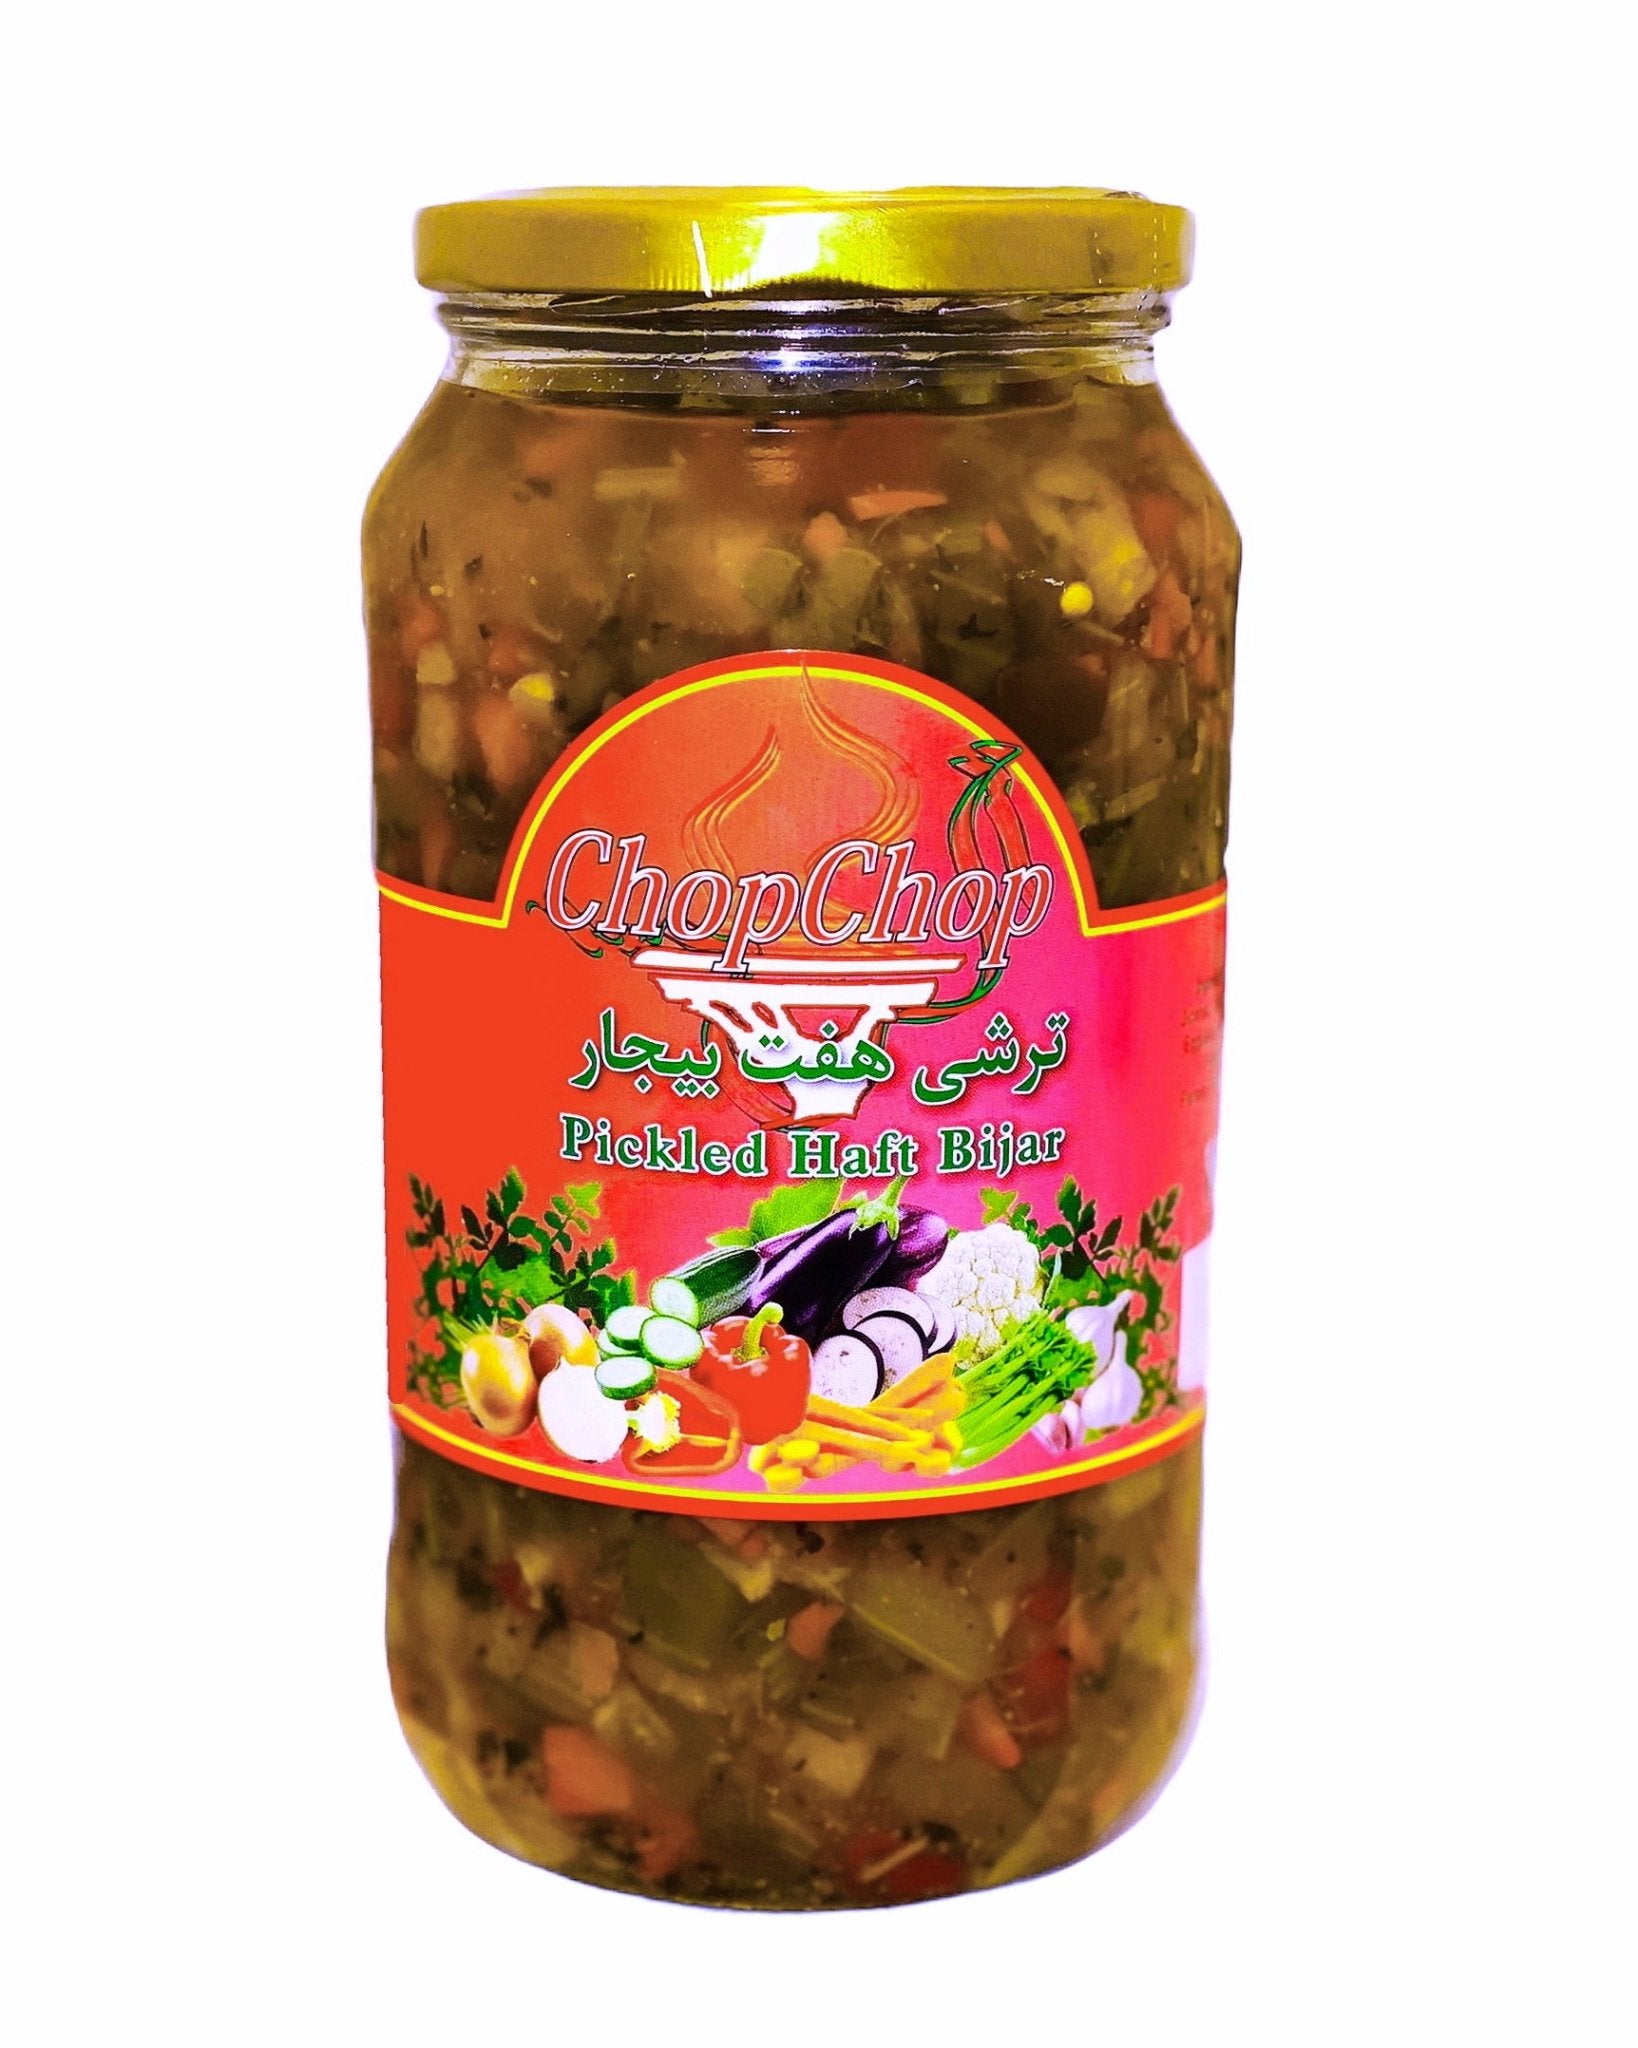 Mixed Marinated Vegetable Pickle - 32 Oz (Torshi Haft e Bijar, Turshi)